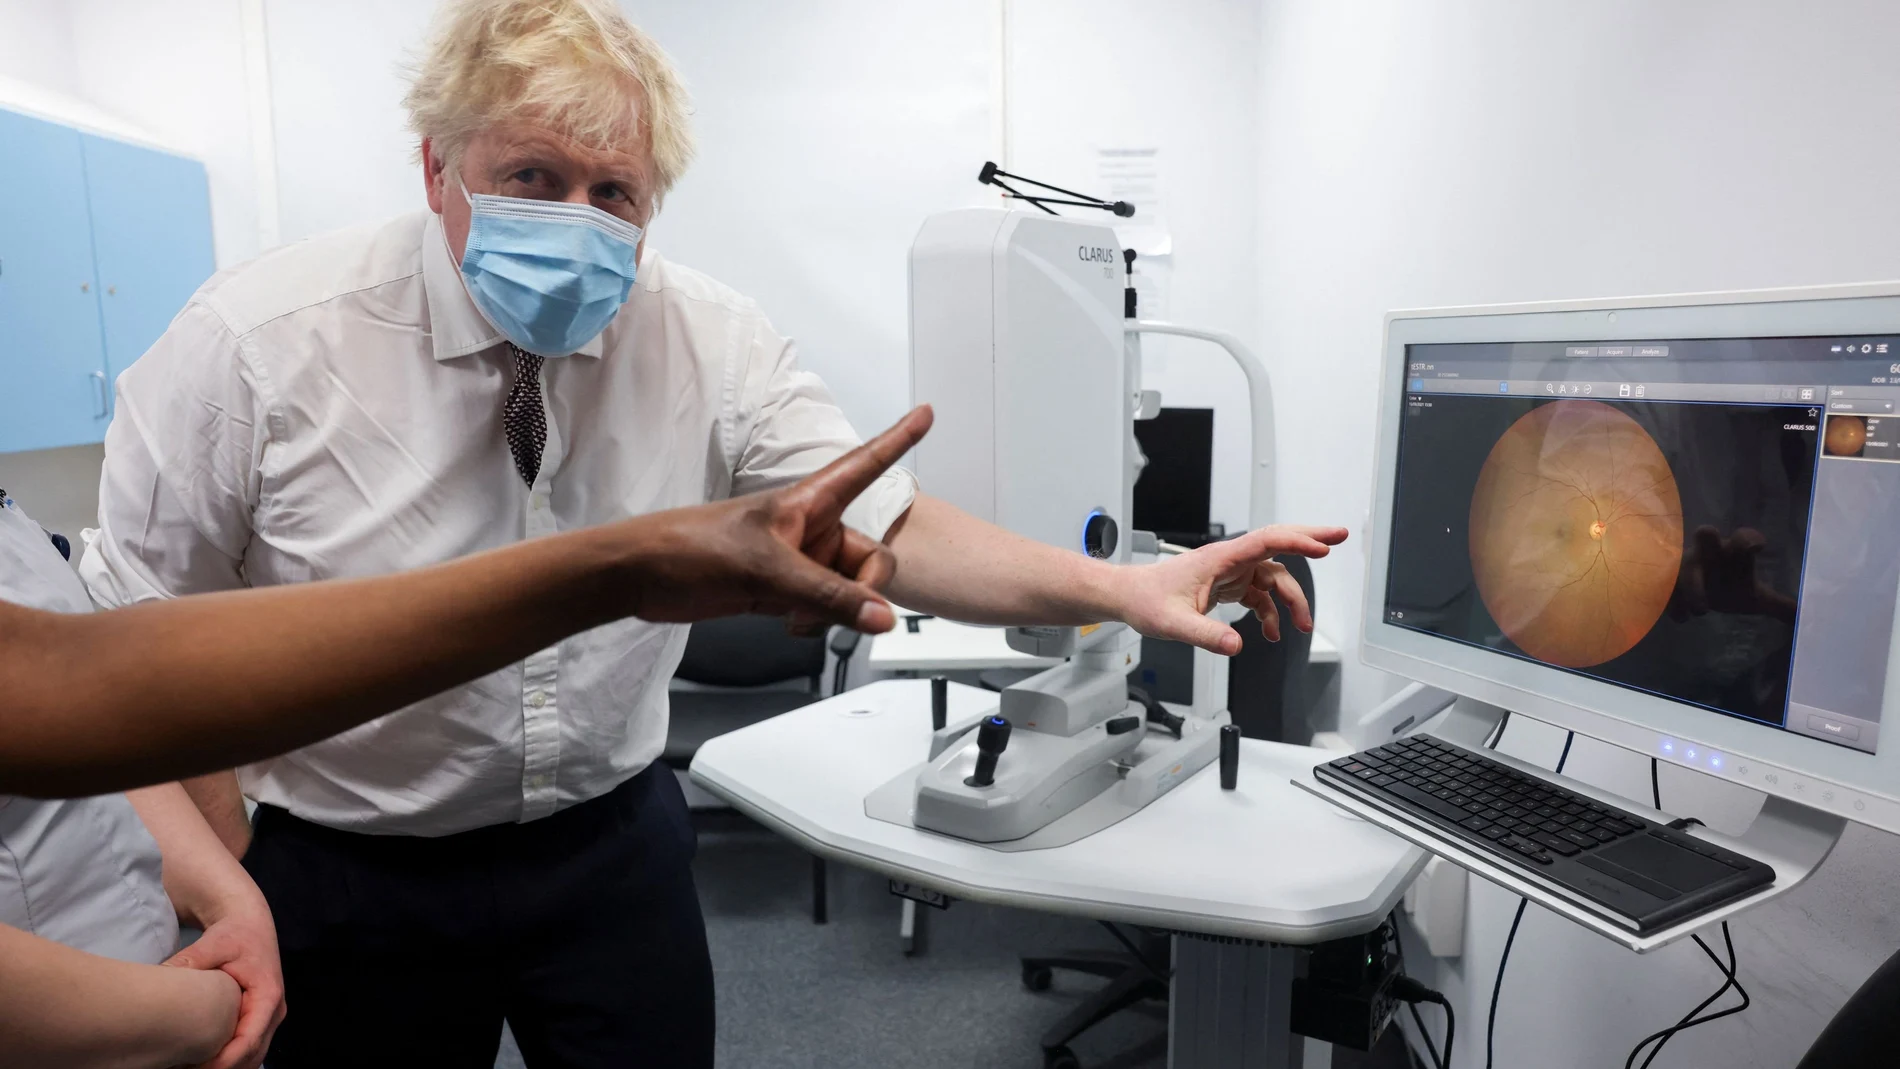 El primer ministro británico, Boris Johnson, gesticula durante una visita al Finchley Memorial Hospital, al norte de Londres